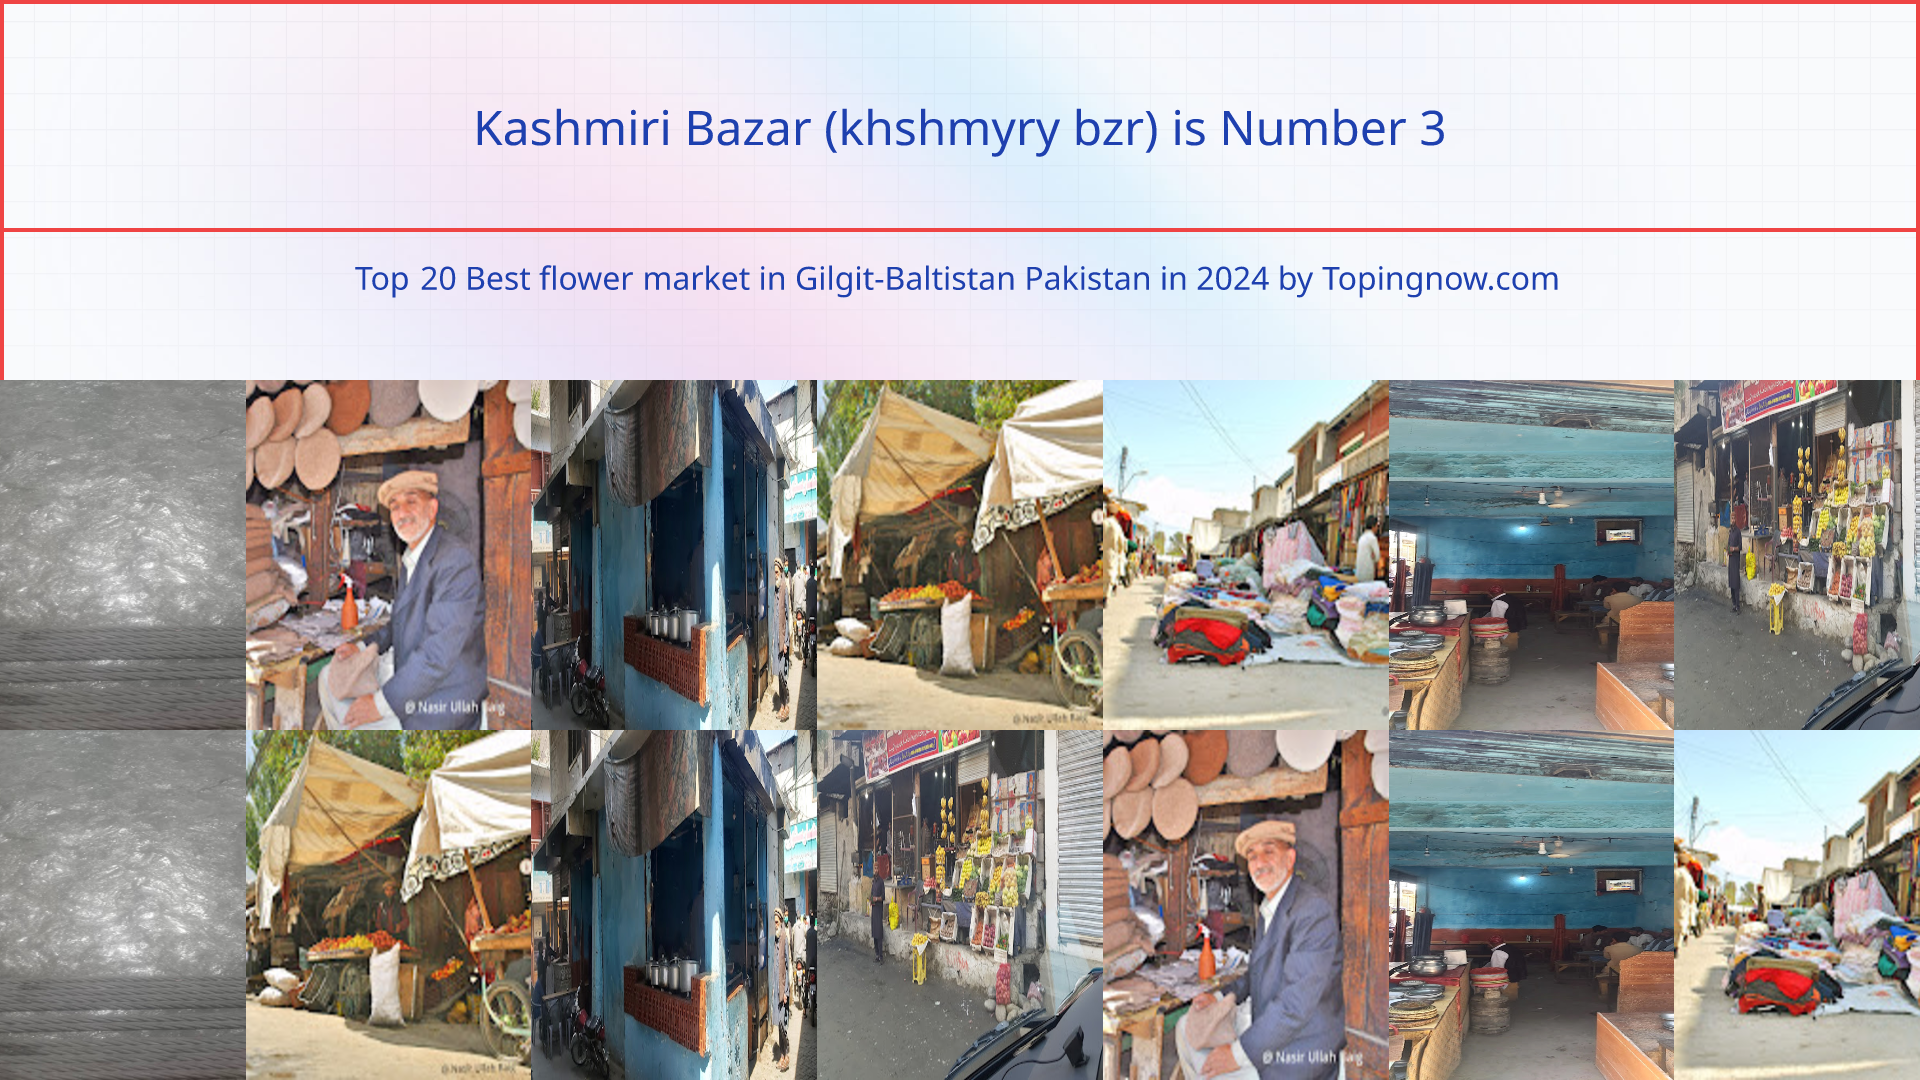 Kashmiri Bazar (khshmyry bzr): Top 20 Best flower market in Gilgit-Baltistan Pakistan in 2024